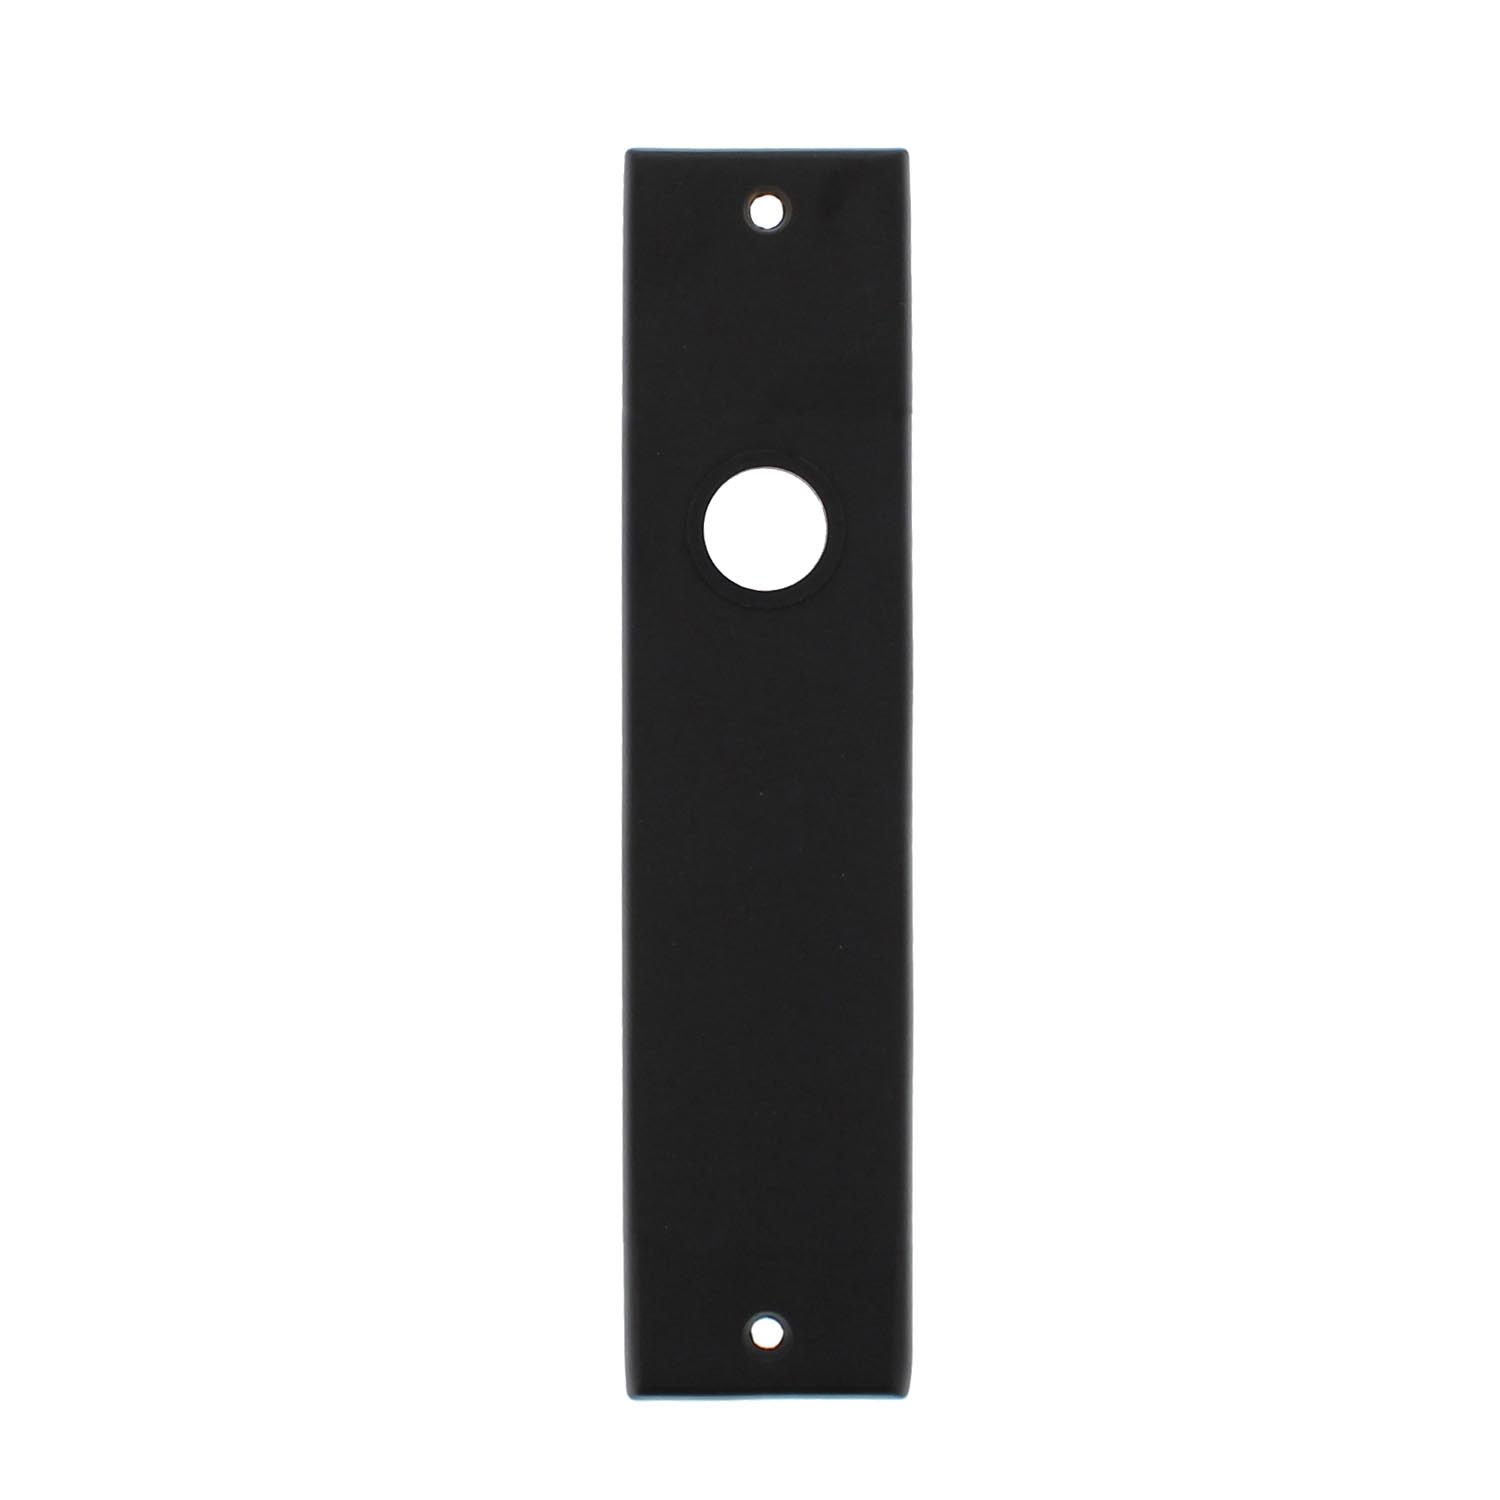 na school Hoes Respect Intersteel - stijlvol deurbeslag - Kortschild rechthoekig blind mat zwart  (0023.256811)